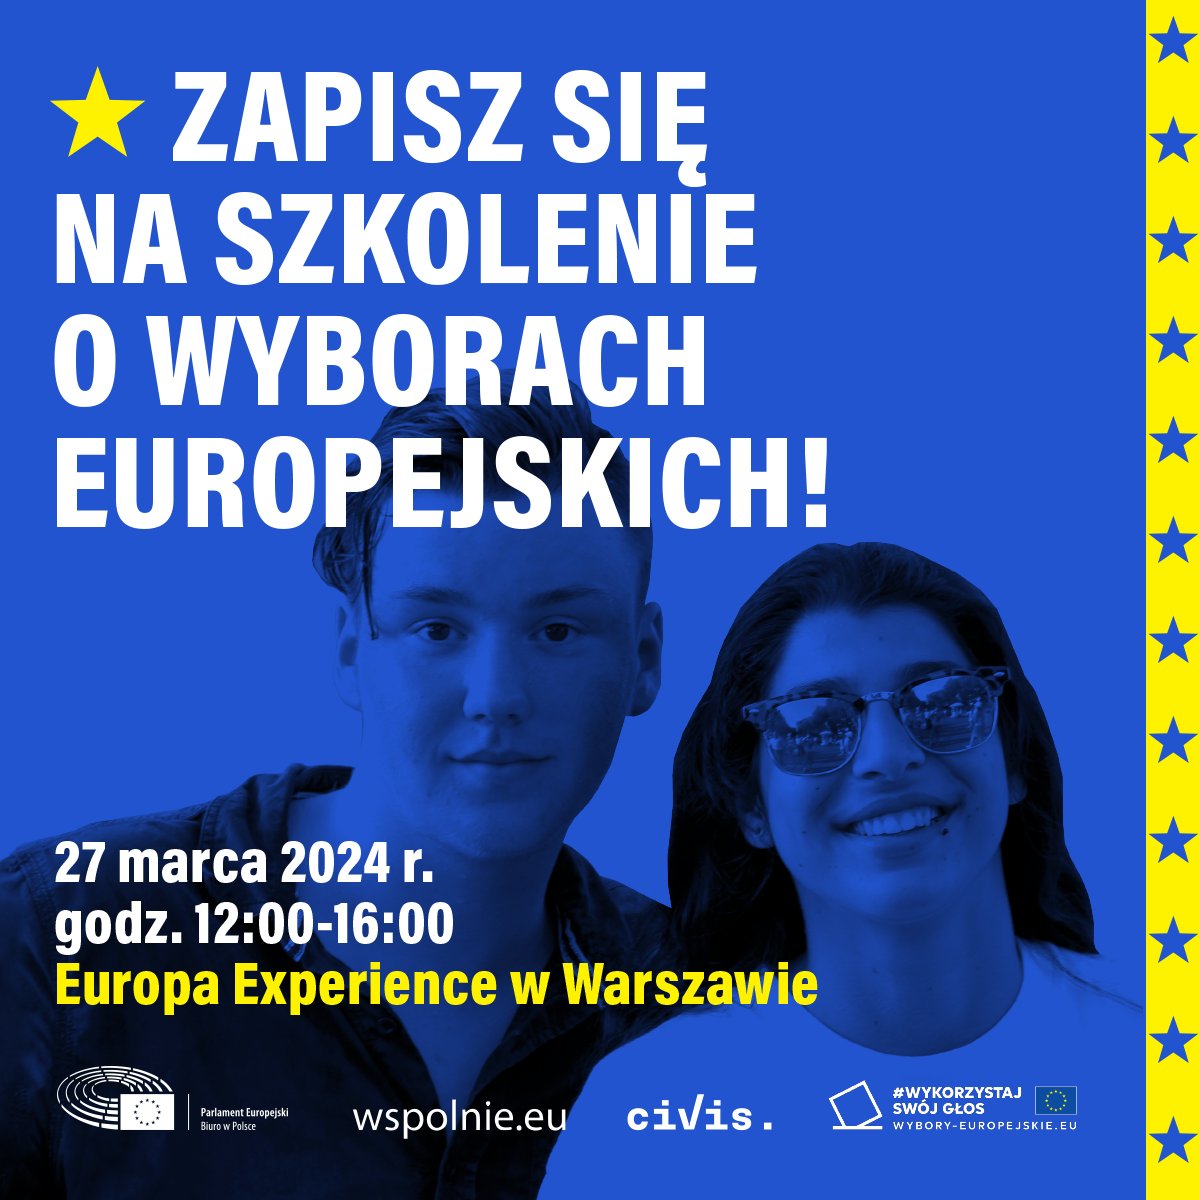 🇪🇺📆 Już w środę, 27 marca w centrum #EuropaExperience w Warszawie odbędą się warsztaty dla społeczności #wspolnieeu o wyborach do Parlamentu Europejskiego.

Przyjdź i #WykorzystajSwojGlos w wyborach 9 czerwca!

Zarejestruj się: 👉 wspolnie.eu/pl/event/warsz…

#wyboryeuropejskie2024